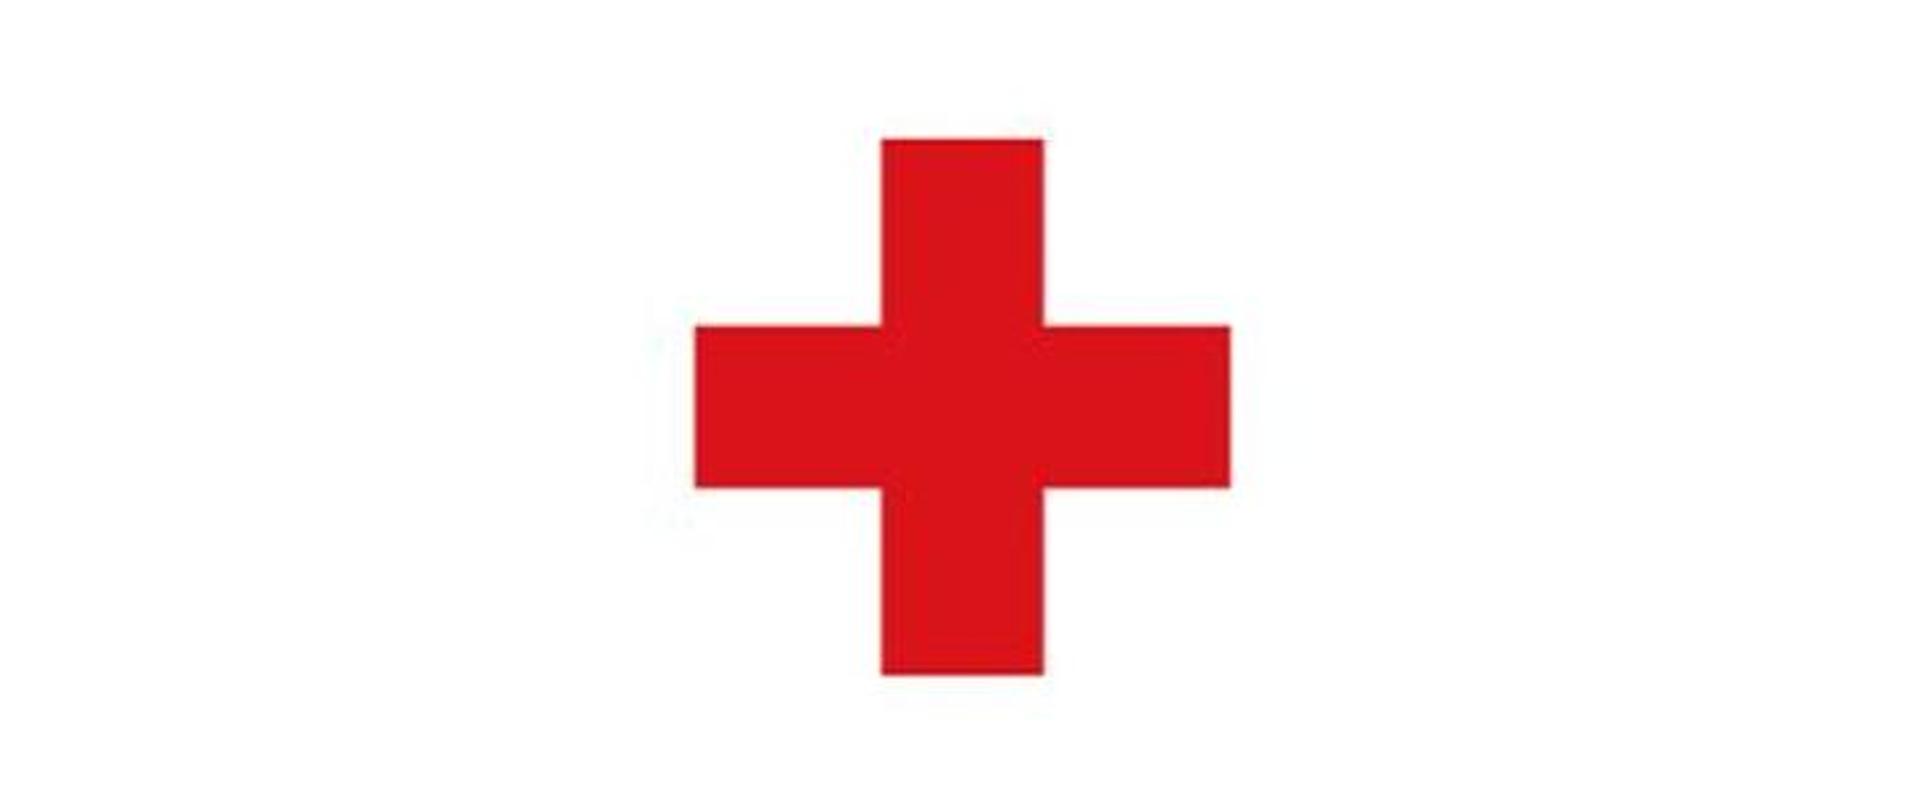 Ilustracja przedstawia na białym tle czerwony krzyż